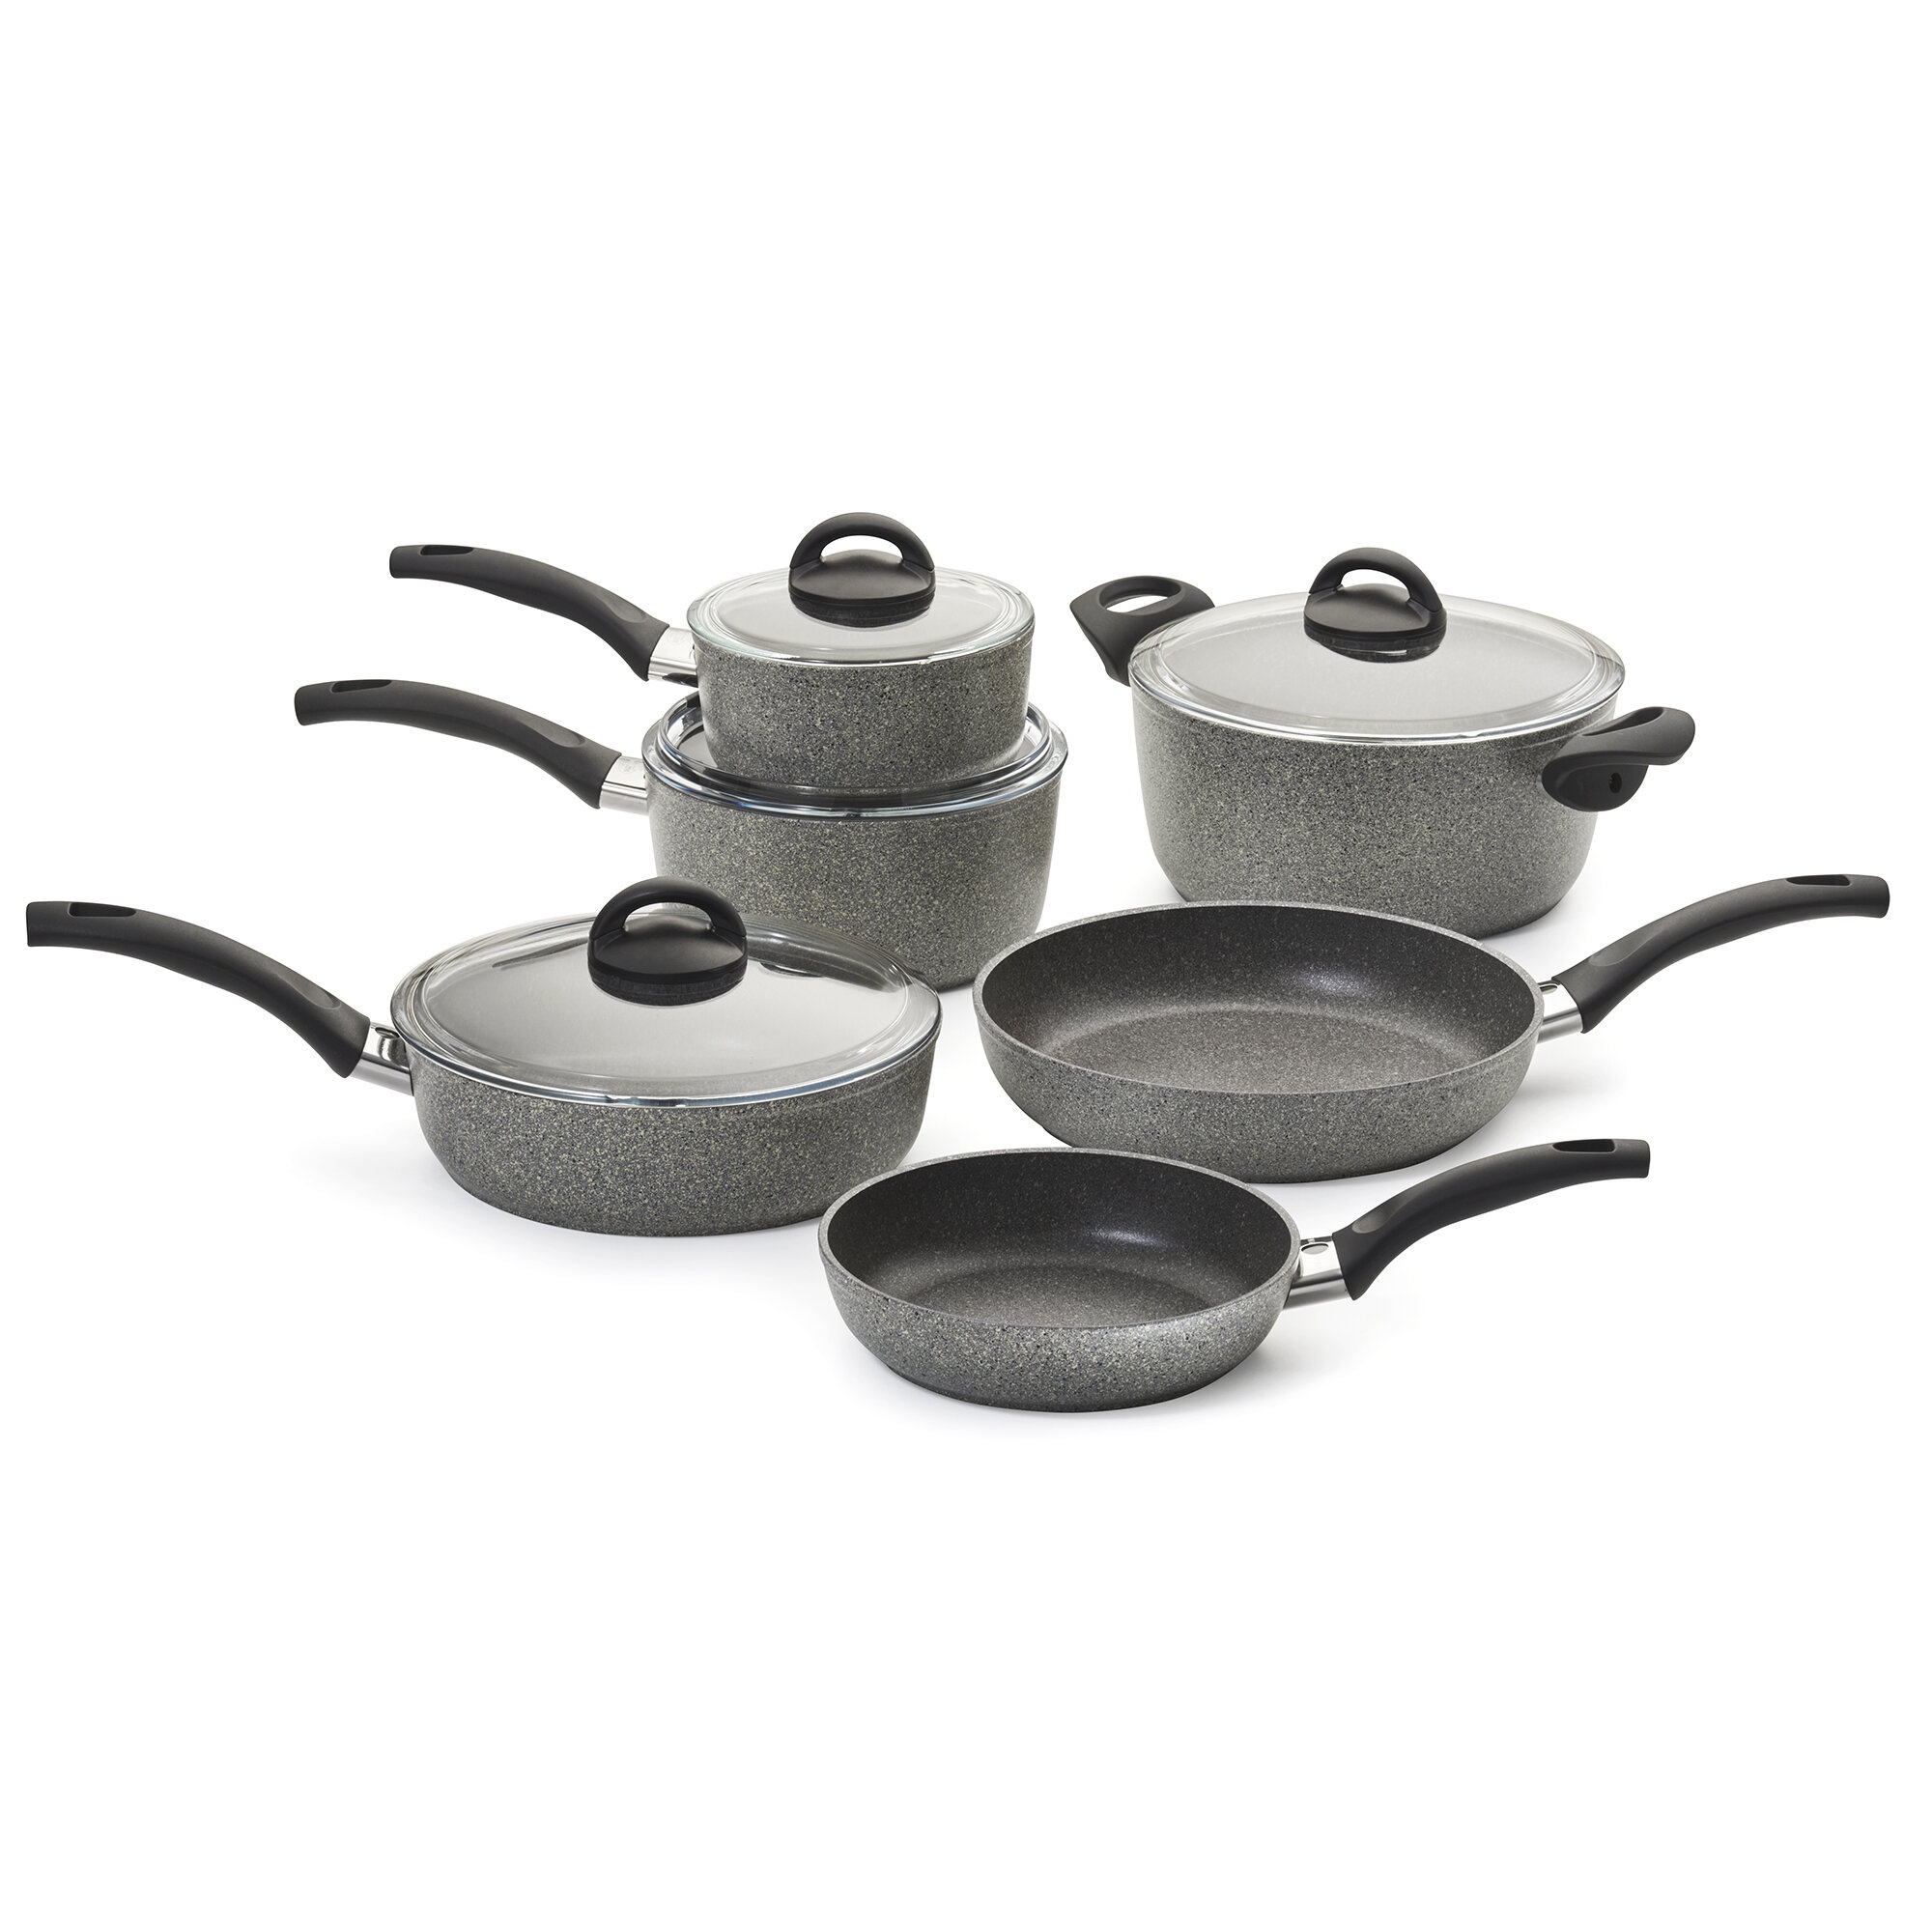 https://assets.wfcdn.com/im/31083915/compr-r85/6135/61350312/ballarini-parma-forged-aluminum-10-piece-nonstick-cookware-set.jpg